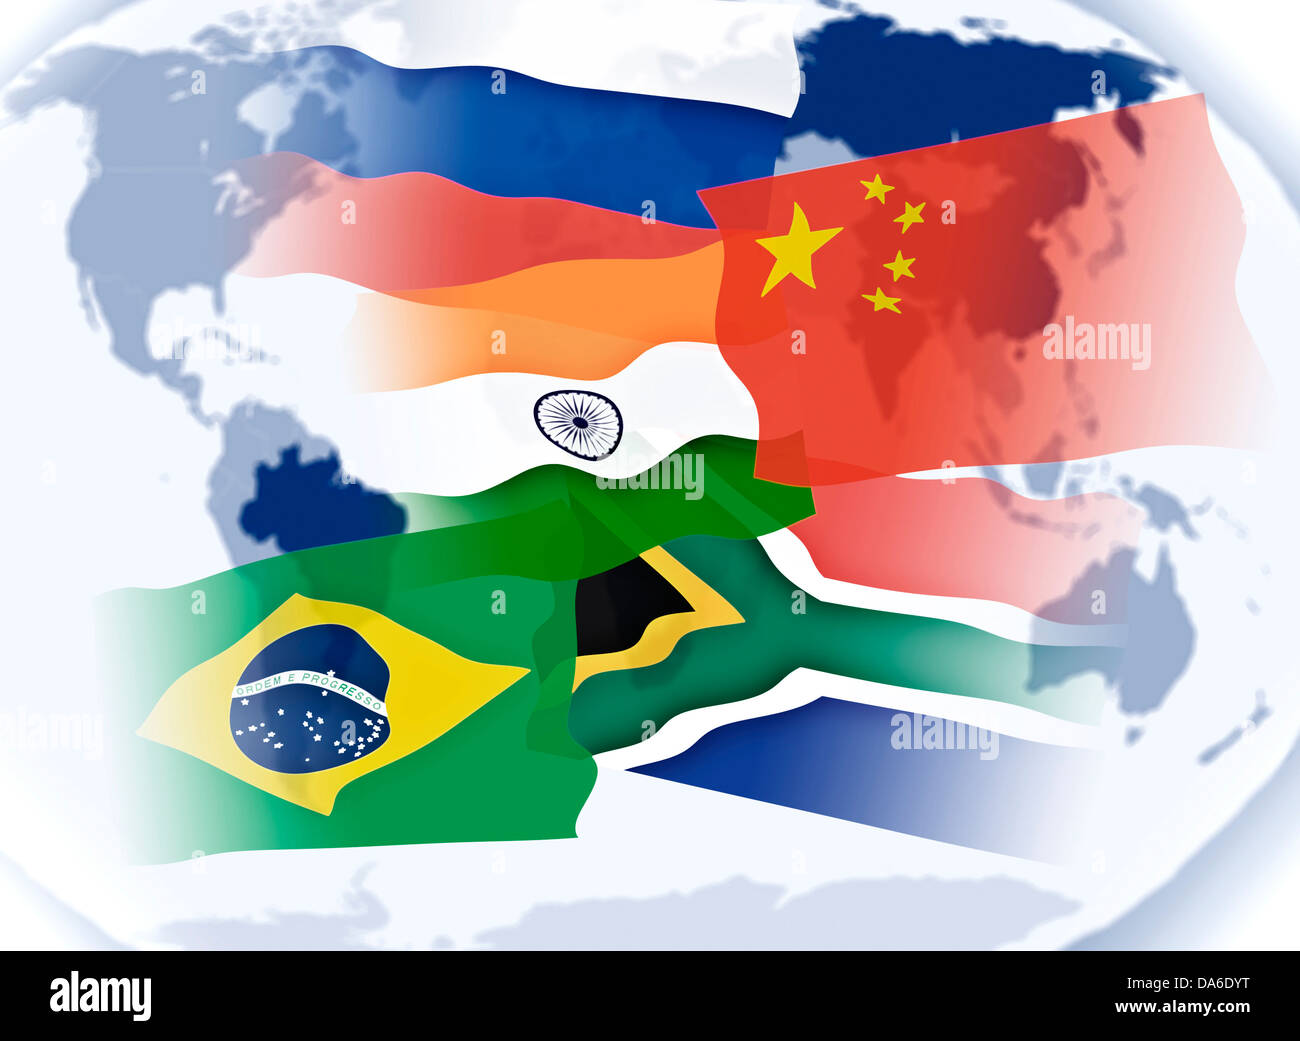 Abbildung auf das Thema BRICS-Staaten mit Nationalflaggen und Weltkarte. Stockfoto